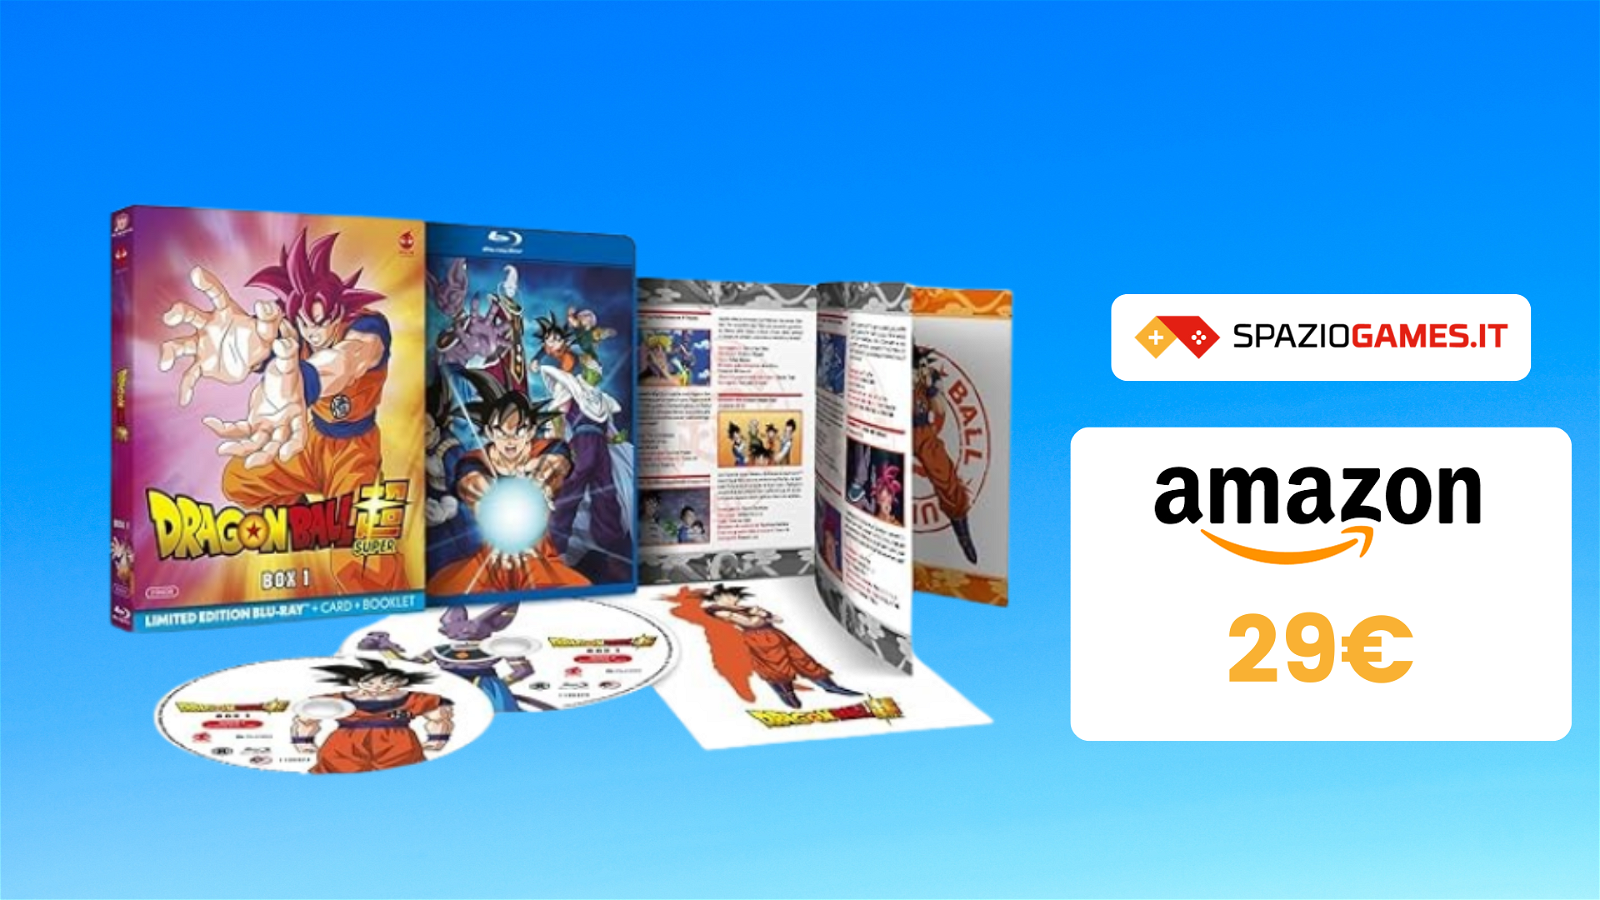 Dragon Ball Super Box 1 (2 Blu-ray) a SOLI 29€! CHE OFFERTA!